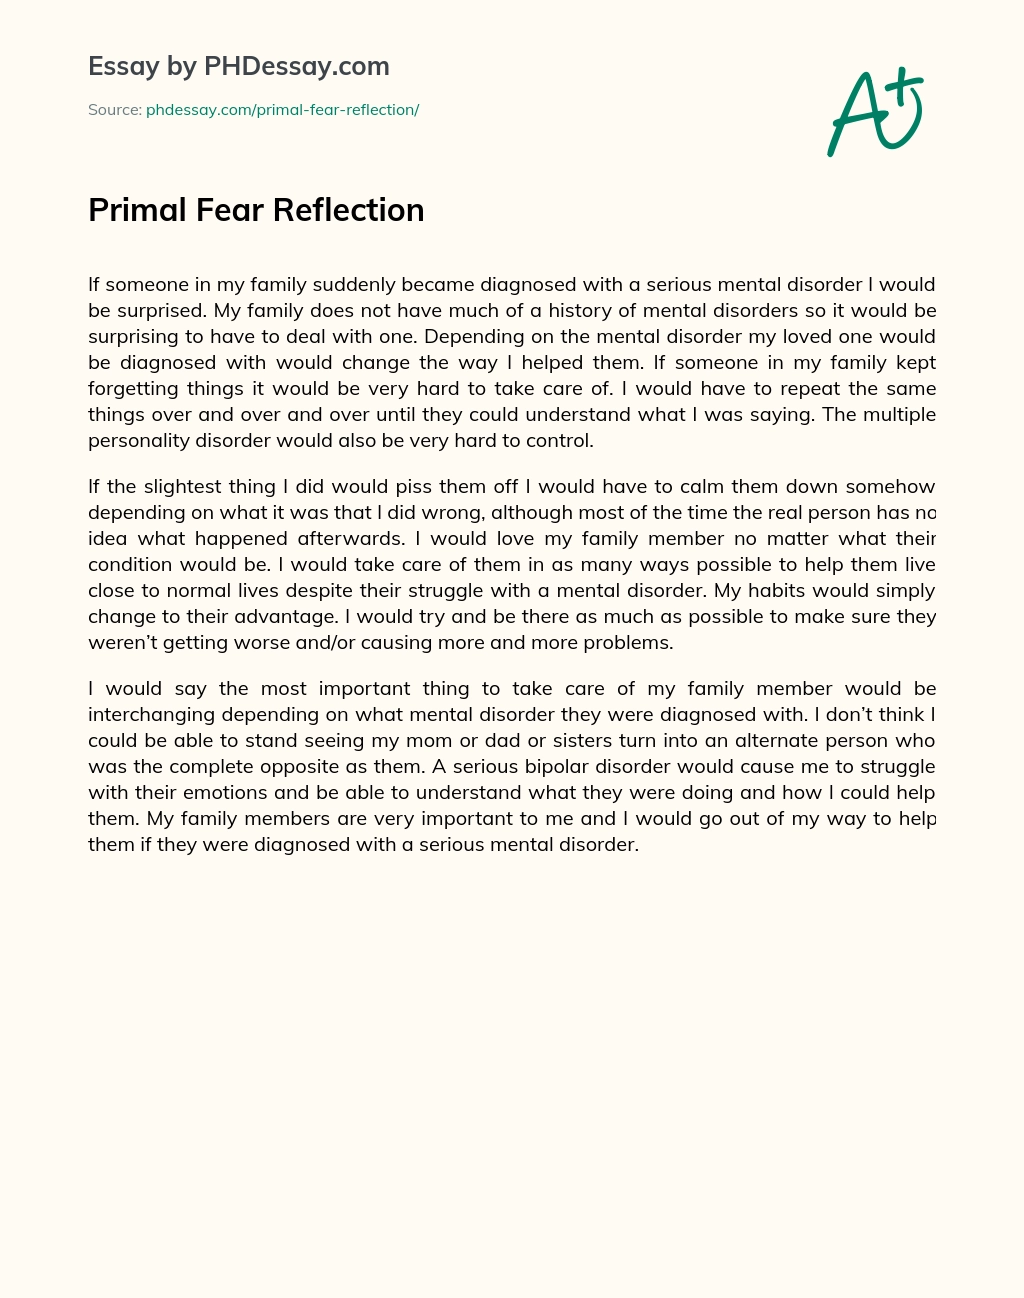 Primal Fear Reflection essay